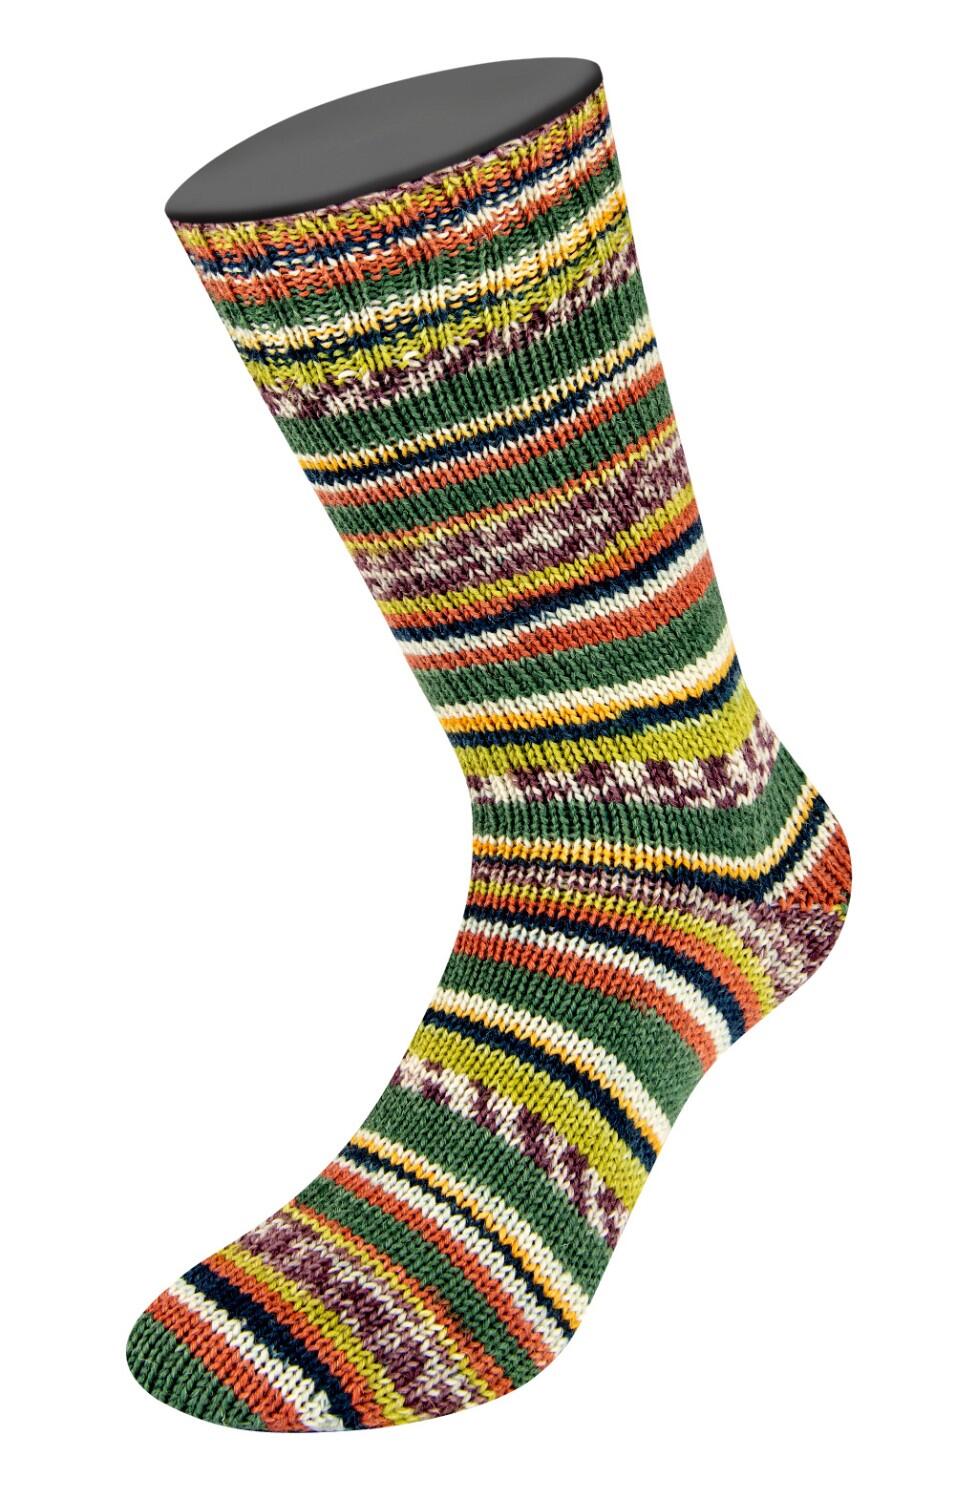 Lana Grossa Landlust Sockenwolle  "Bunte Bänder " 100g Farbe: 708